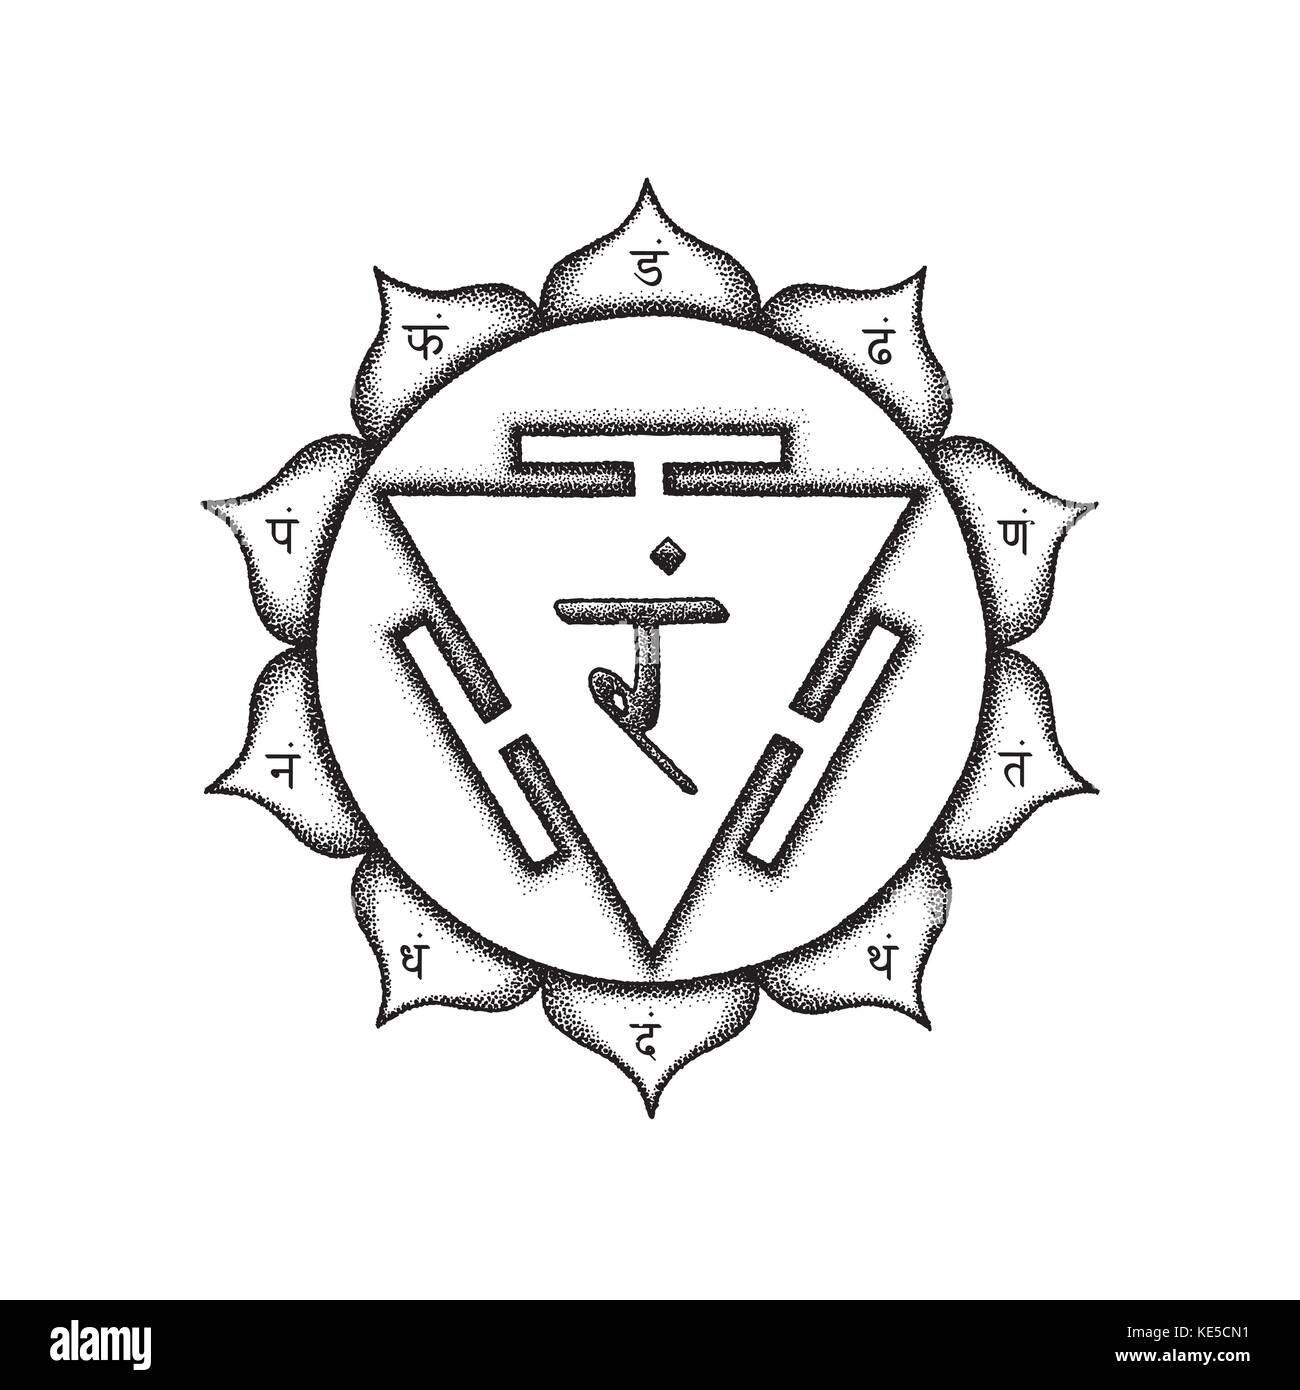 El tercer chakra manipura vectorial de las joyas de la ciudad de sánscrito mantra  RAM hinduismo sílabas semillas de pétalos de loto. dot trabajo dibujado a  mano de estilo tatuaje monoch negro